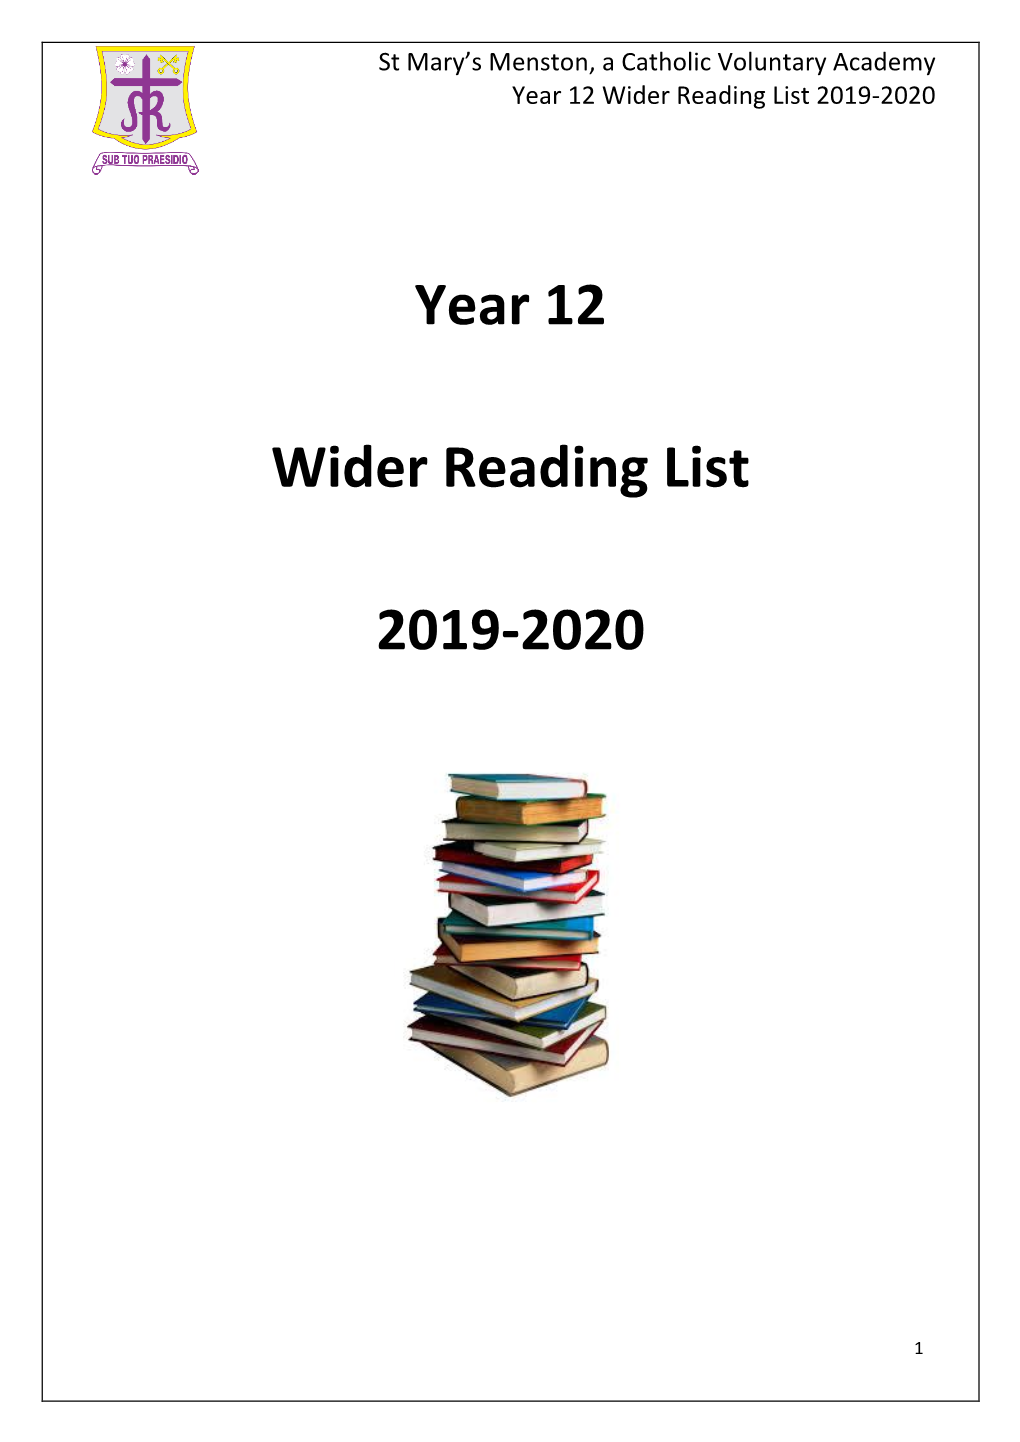 Year 12 Wider Reading List 2019-2020